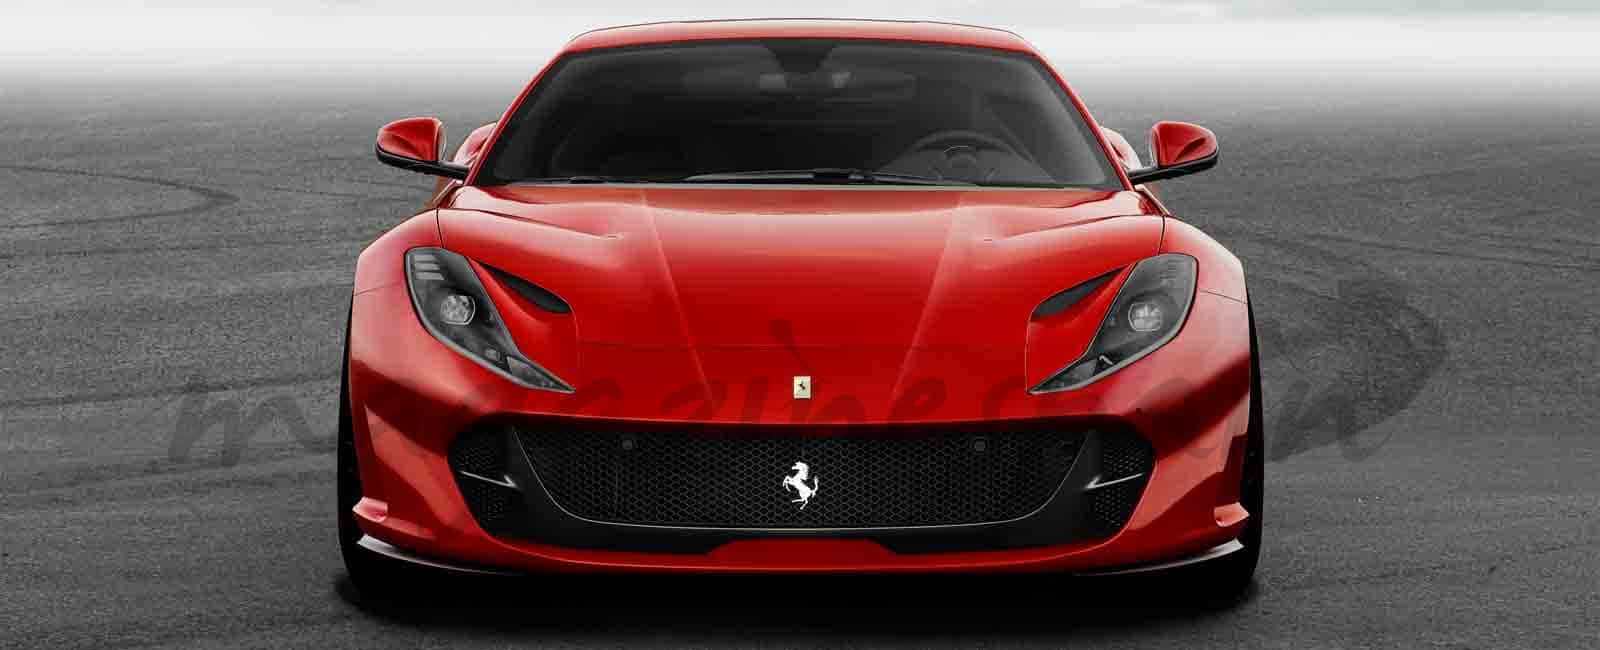 Ferrari presenta su nuevo 812 Superfast